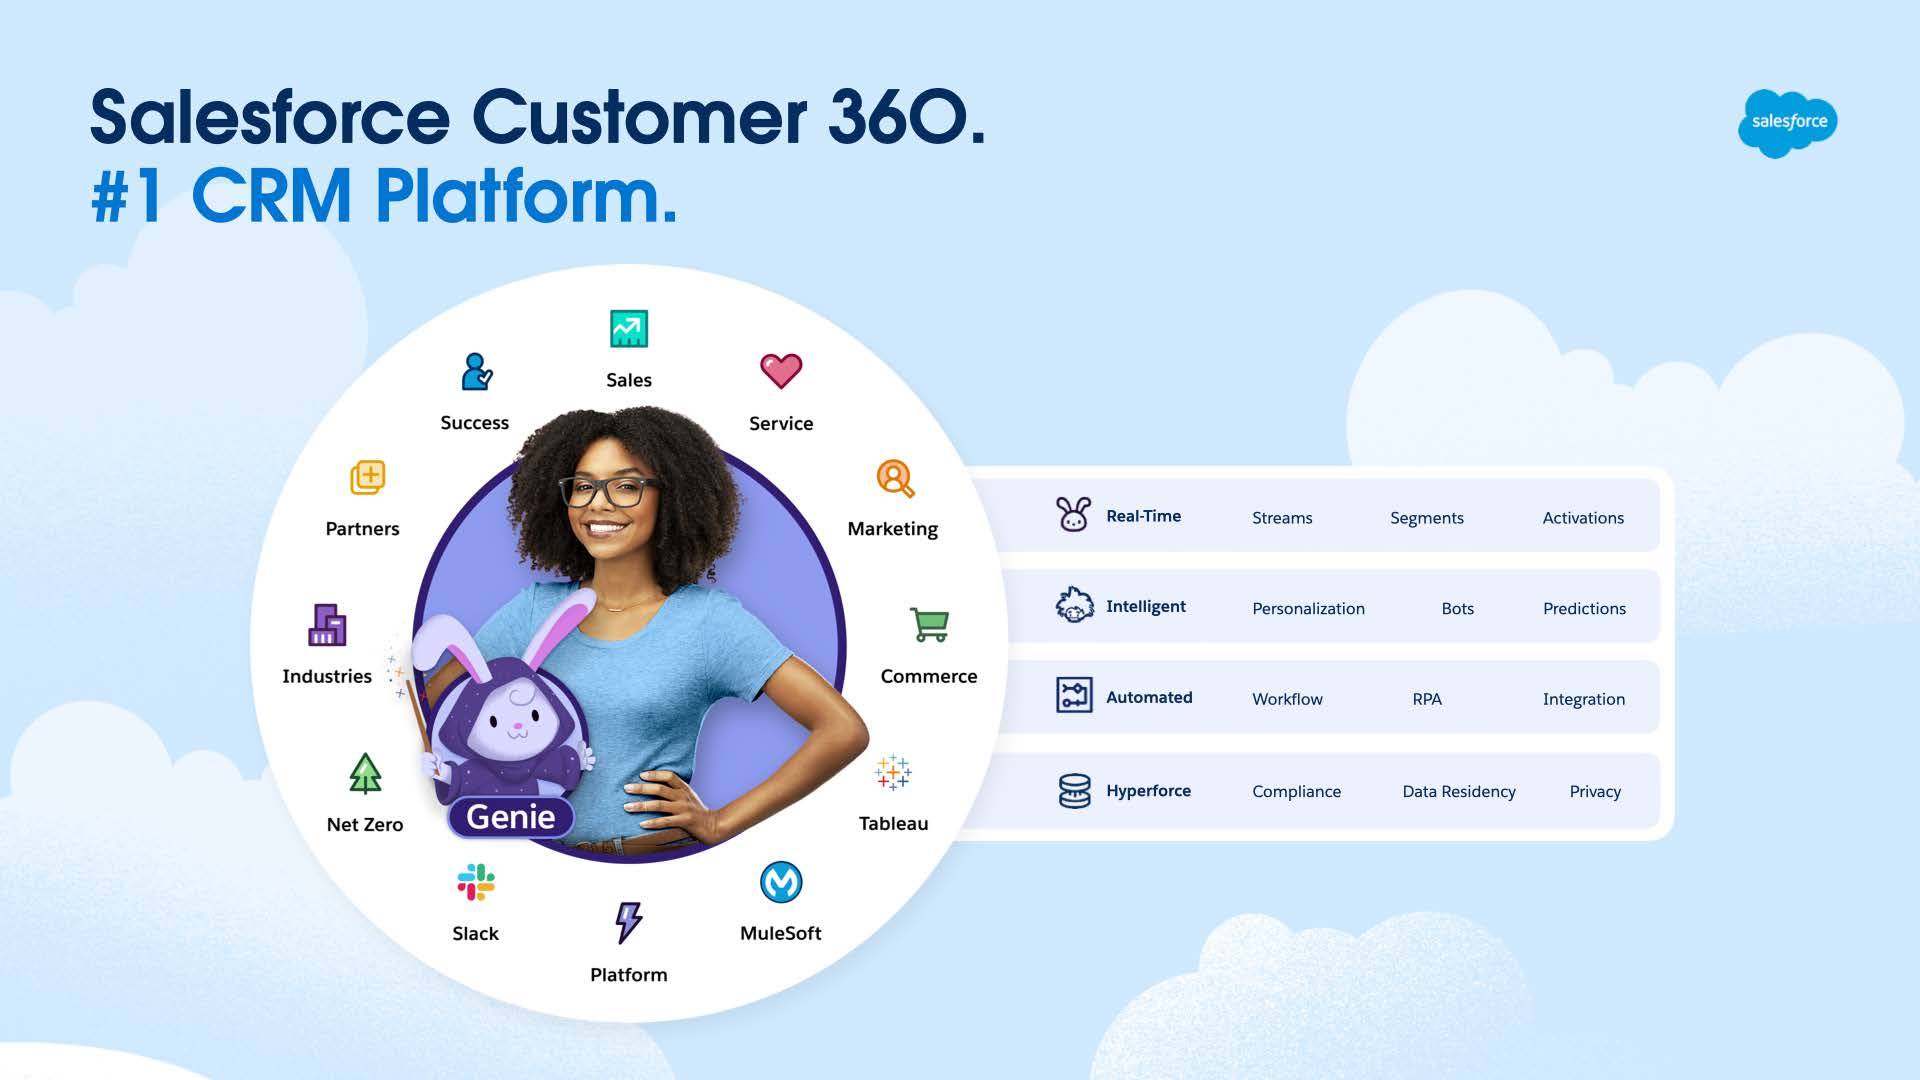  Salesforce Customer 360: Ahorre tiempo. Ahorre dinero. Aumente los ingresos. Hyperforce: tiempo real, inteligente y automatizado 